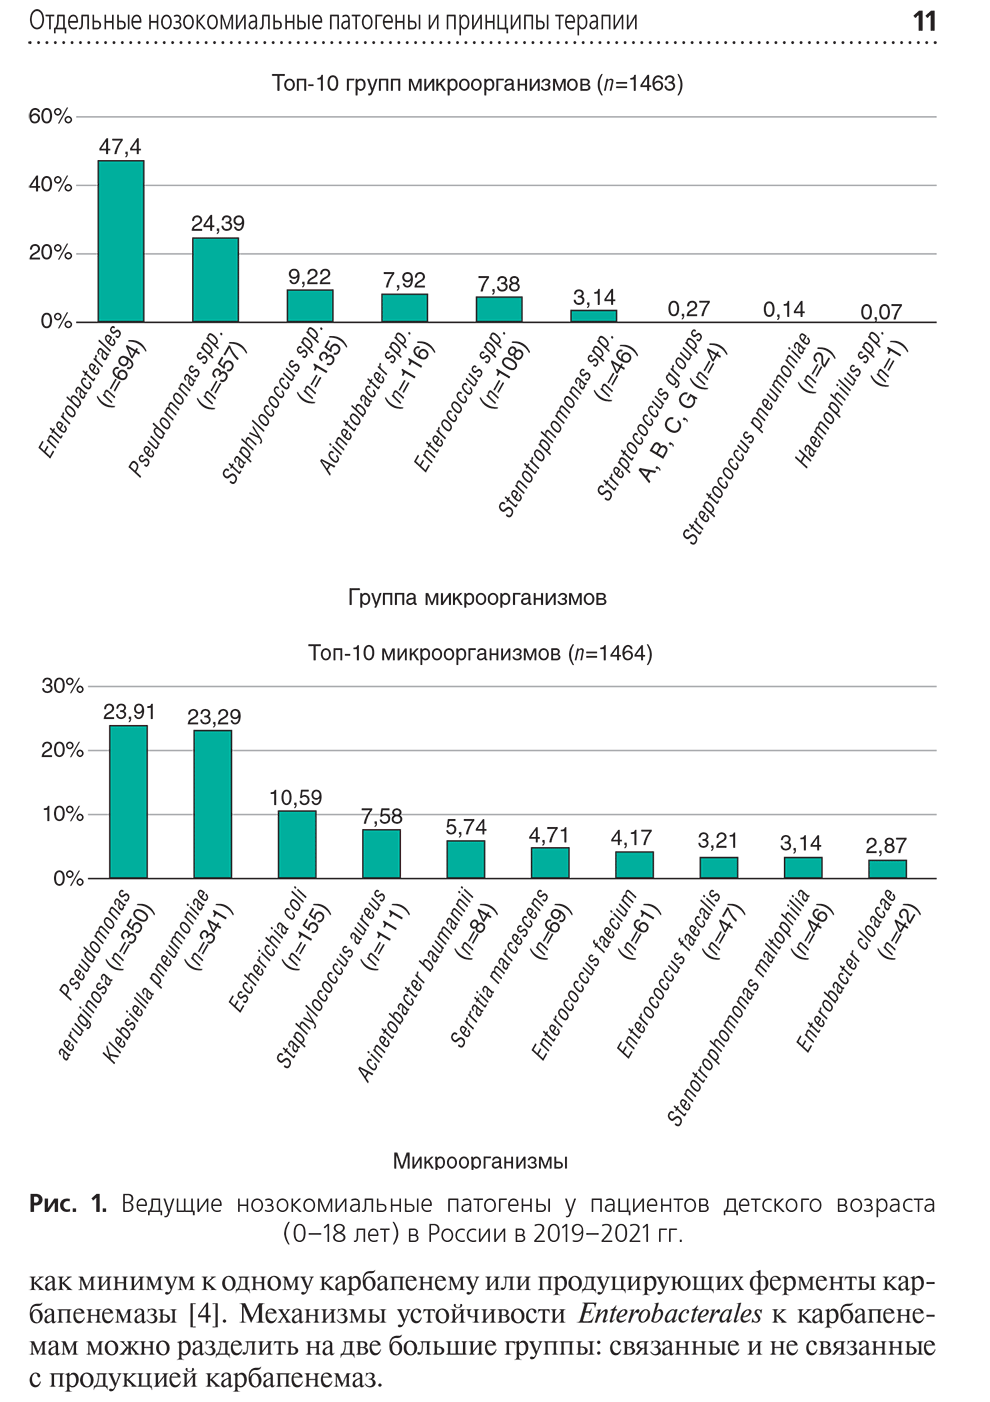 Ведущие нозокомиальные патогены у пациентов детского возраста (0-18 лет) в России в 2019-2021 гг.